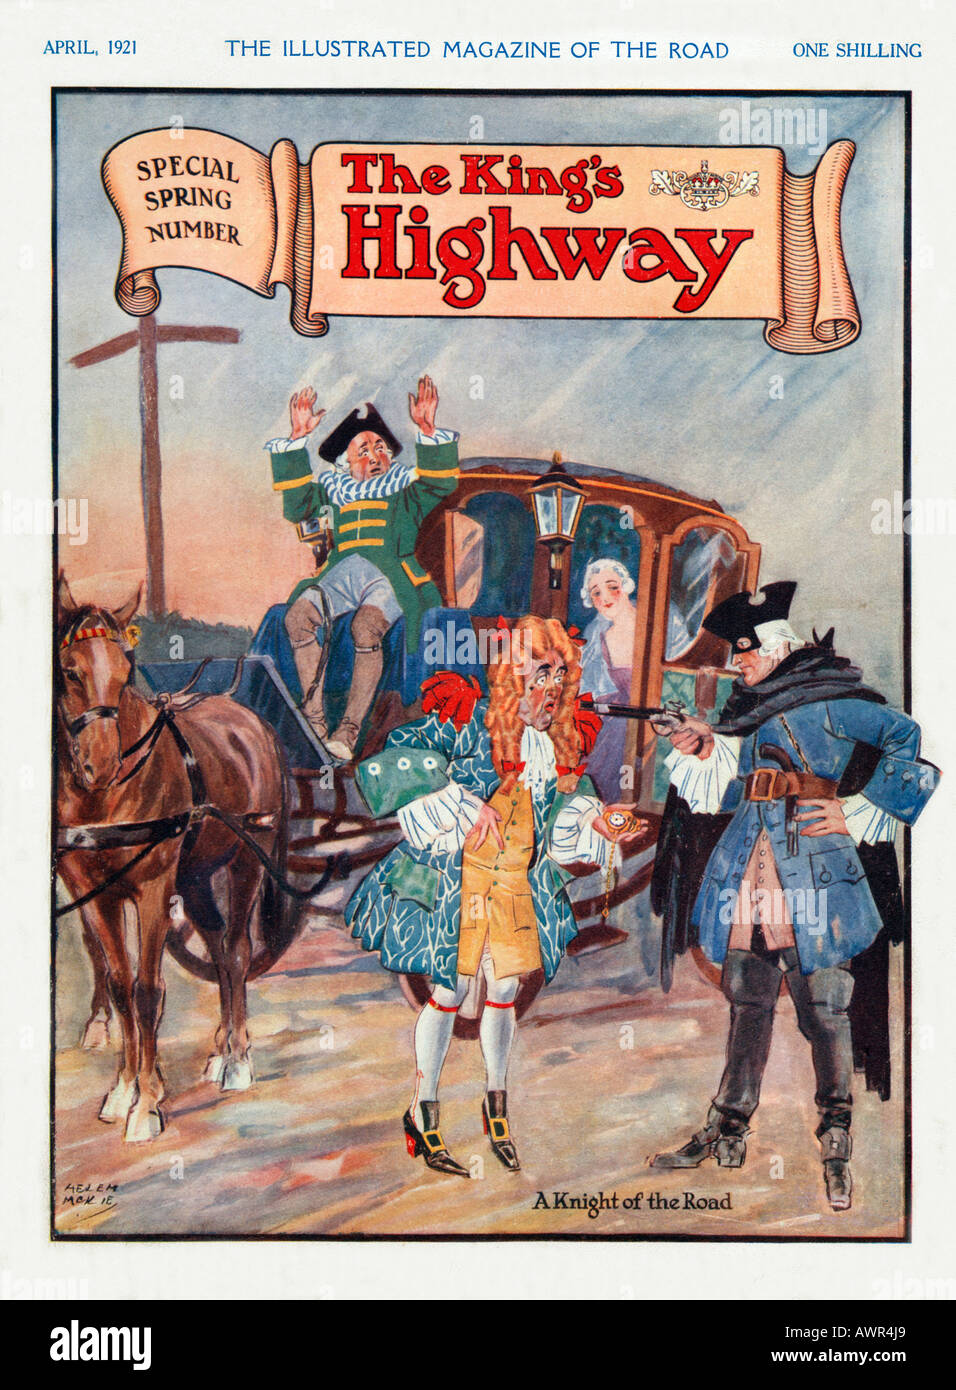 Kings Highway magazine 1920 illustration de la couverture montrant le 18ème siècle chevalier de la route au travail Banque D'Images